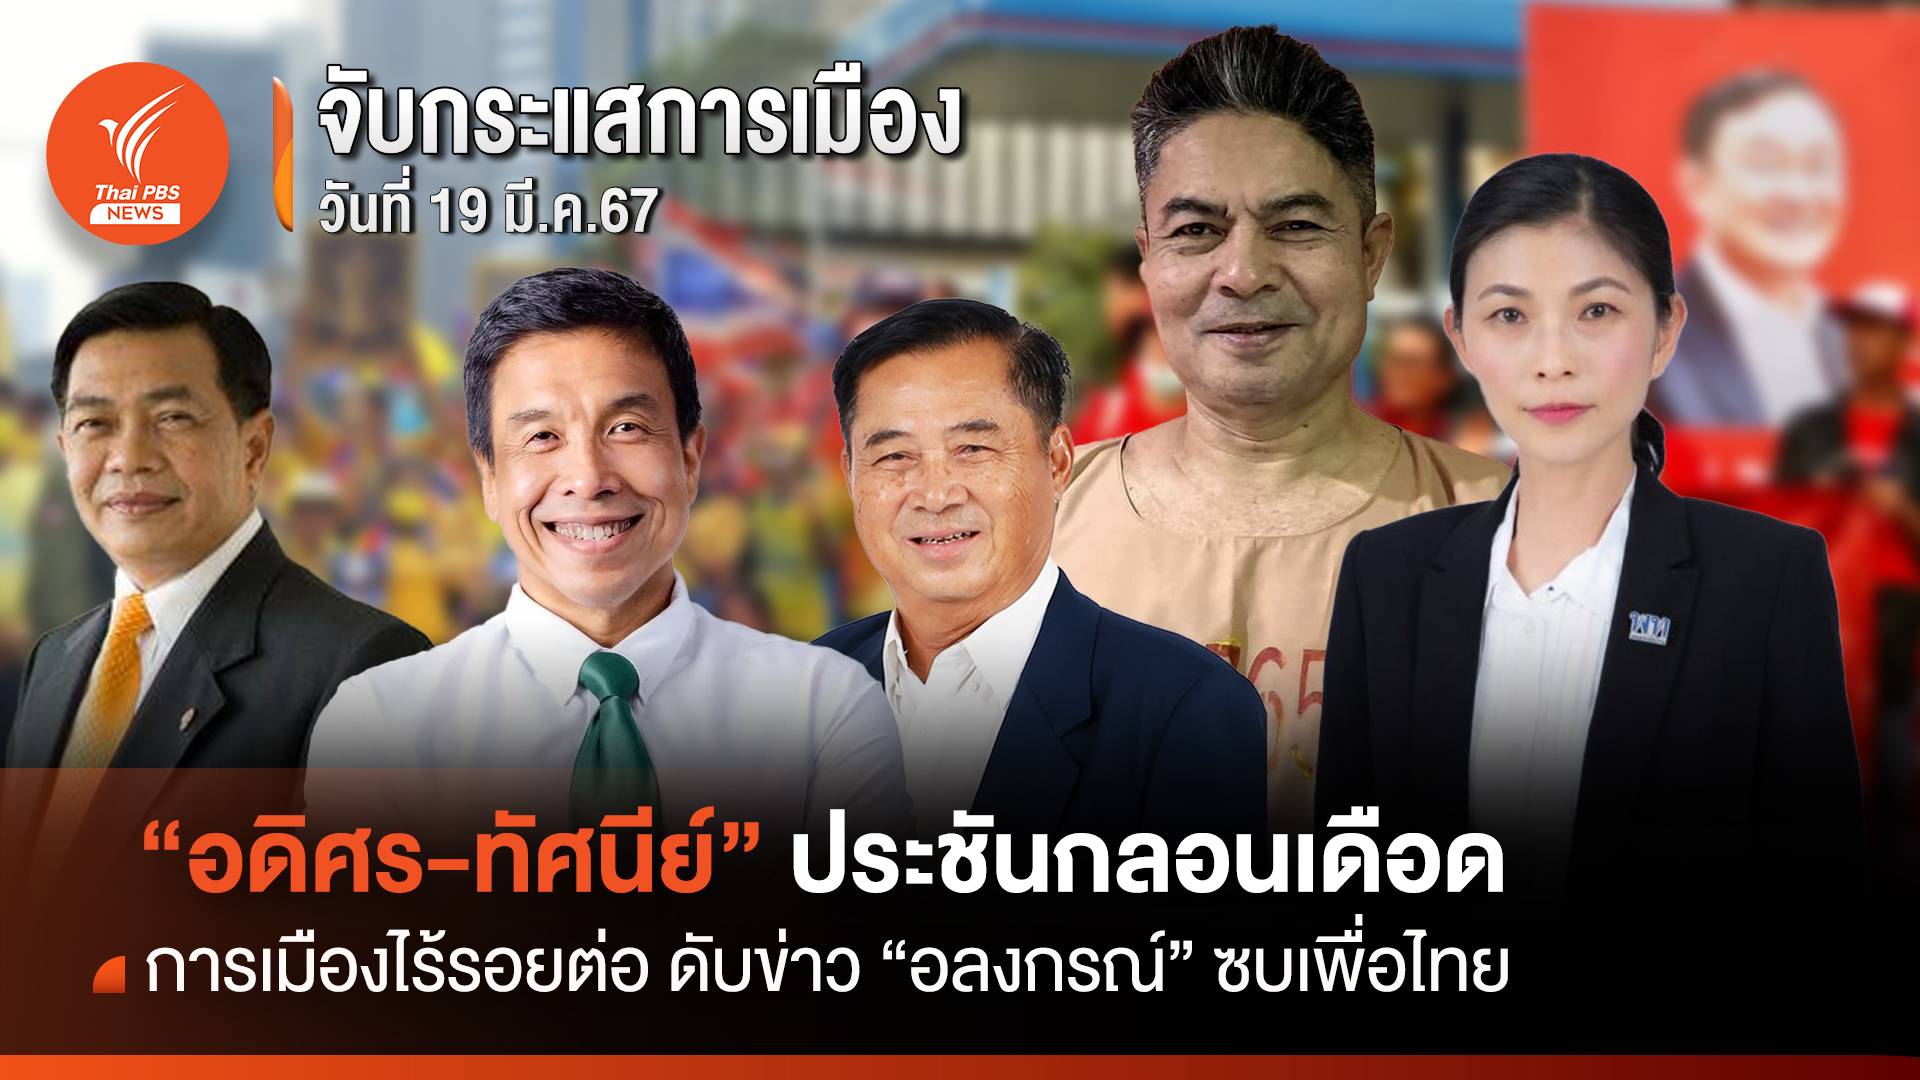 จับกระแสการเมือง:วันที่ 19 มี.ค.67 การเมืองไร้รอยต่อ ดับข่าว “อลงกรณ์” ซบเพื่อไทย “อดิศร-ทัศนีย์” ประชันกลอนเดือด